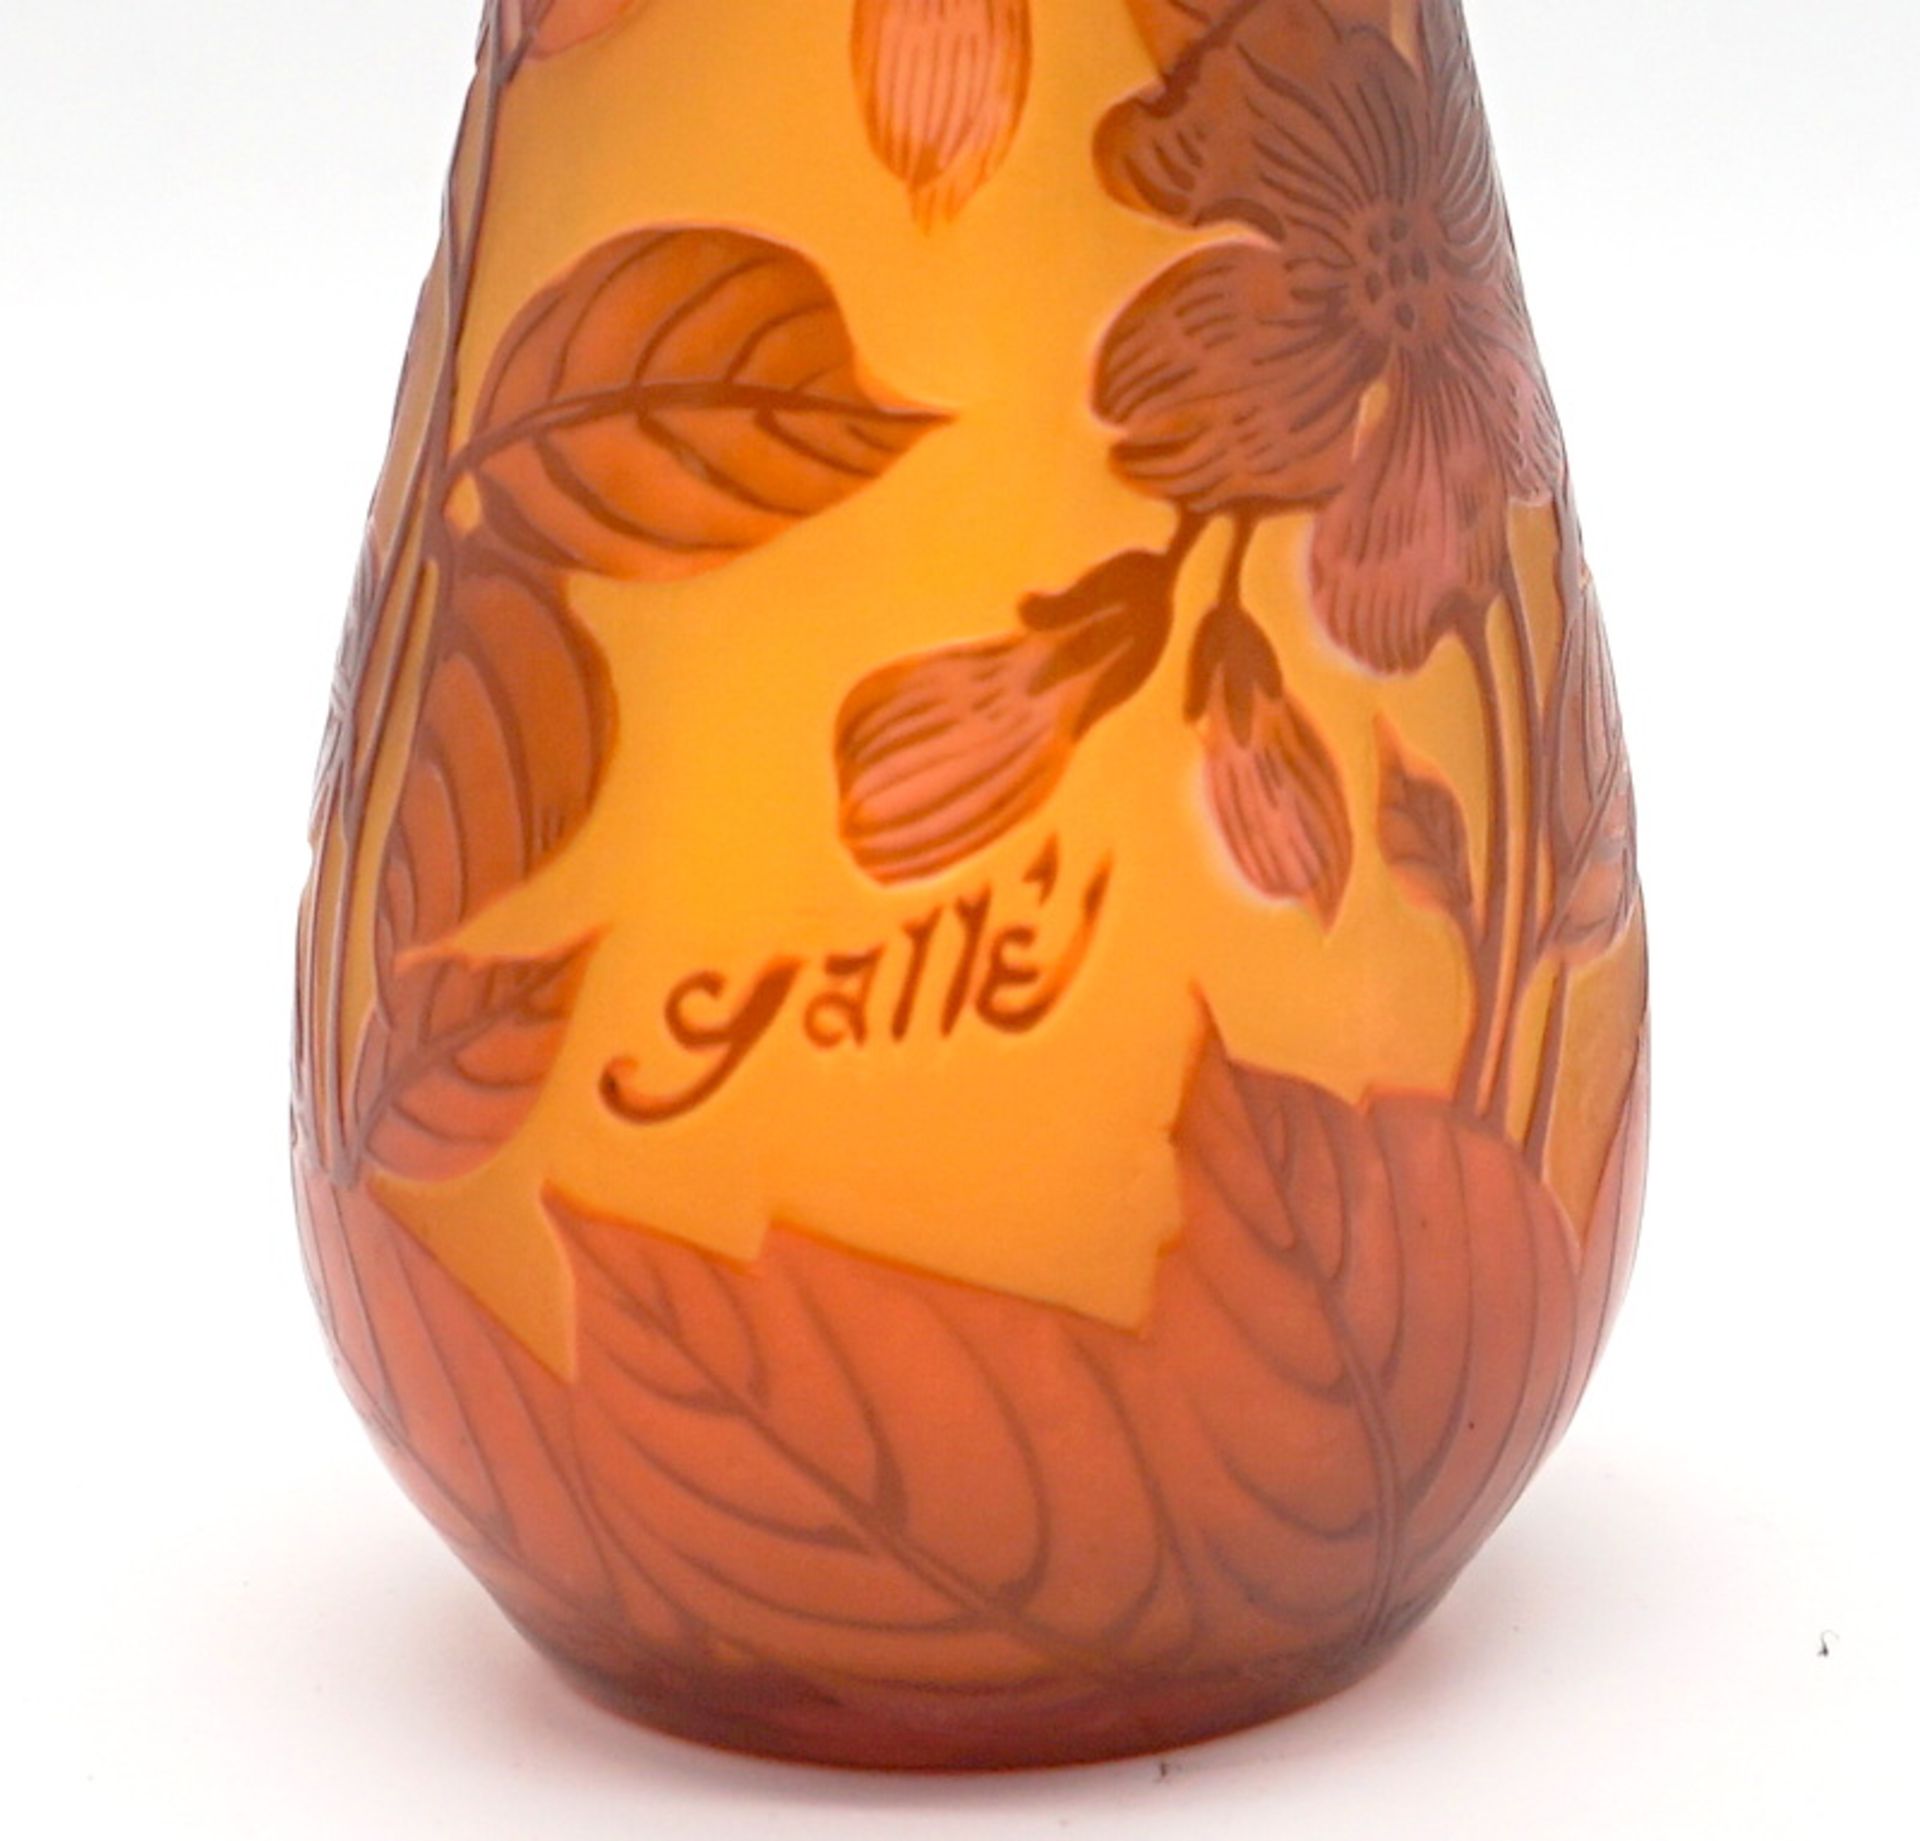 Vase im Stil von Gallé - Image 4 of 5